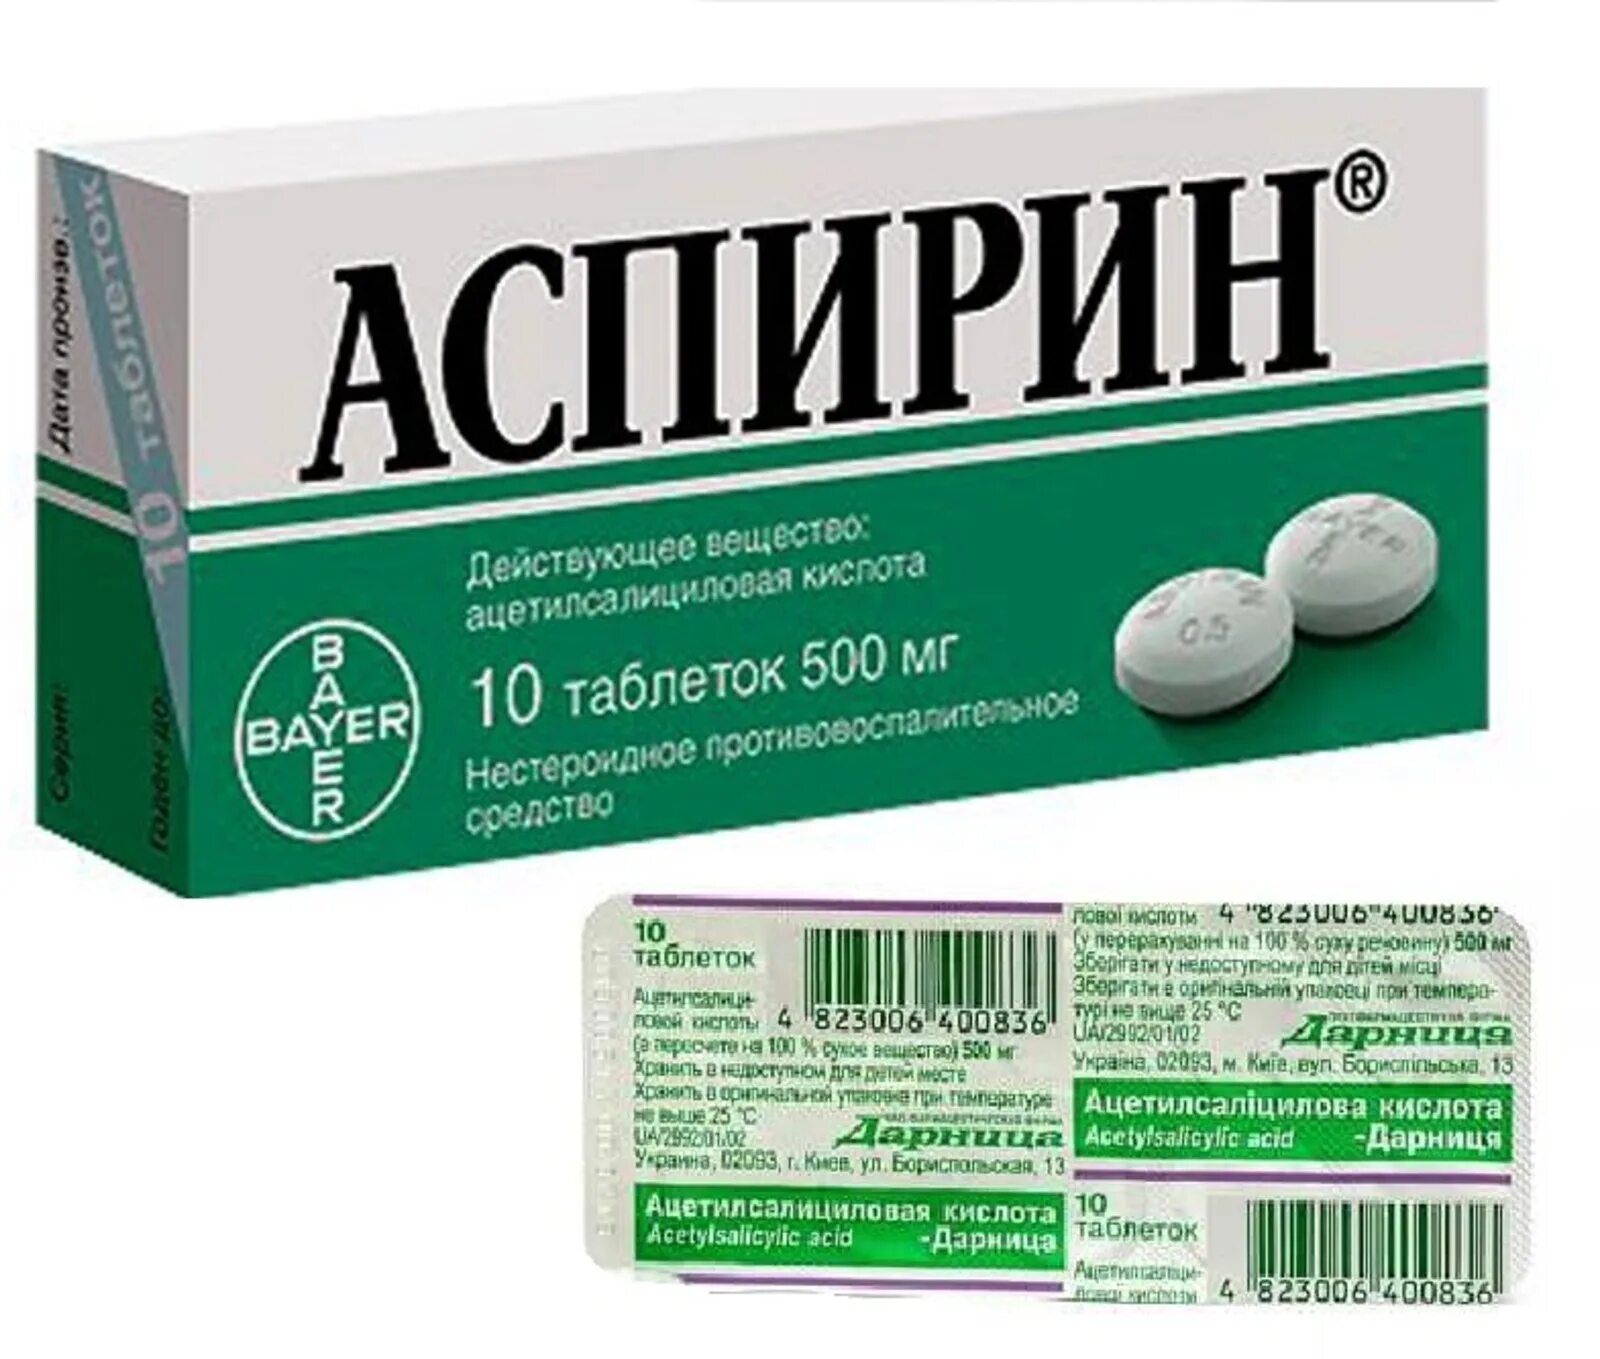 Аспирин 250 мг. Ацетилсалициловая кислота 250мг Bayer. Ацетилсалициловая кислота таб. 500мг №10. Ацетилсалициловая кислота 500 мг табл. Аспирин таблетки купить